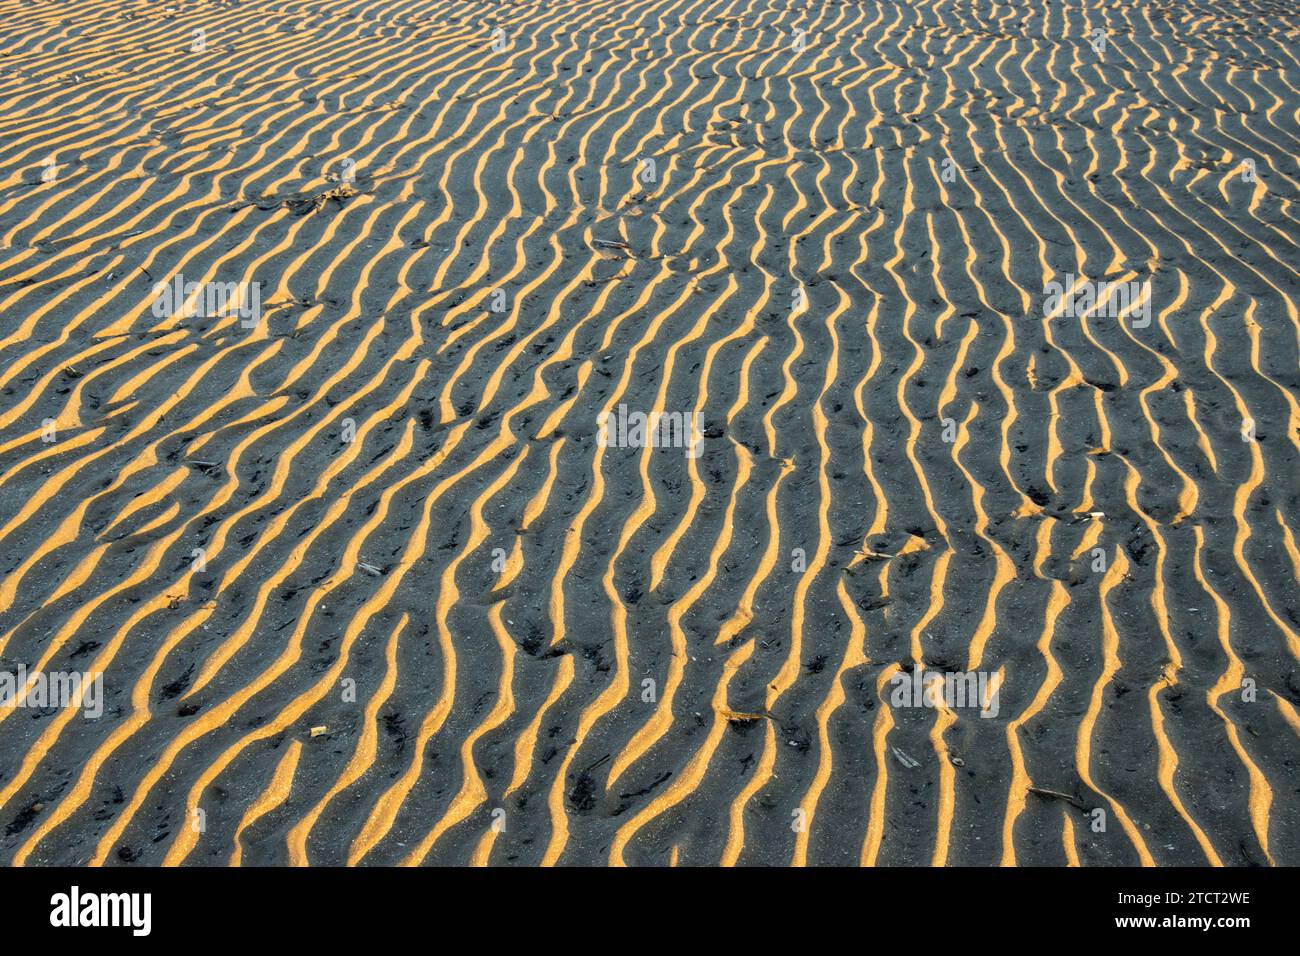 Die Wellen, die die Flut im Sand hinterlassen hat, ähneln einer Wüstenlandschaft mit parallelen Sanddünen. Diese Markierungen im Sand können beibehalten werden. Stockfoto